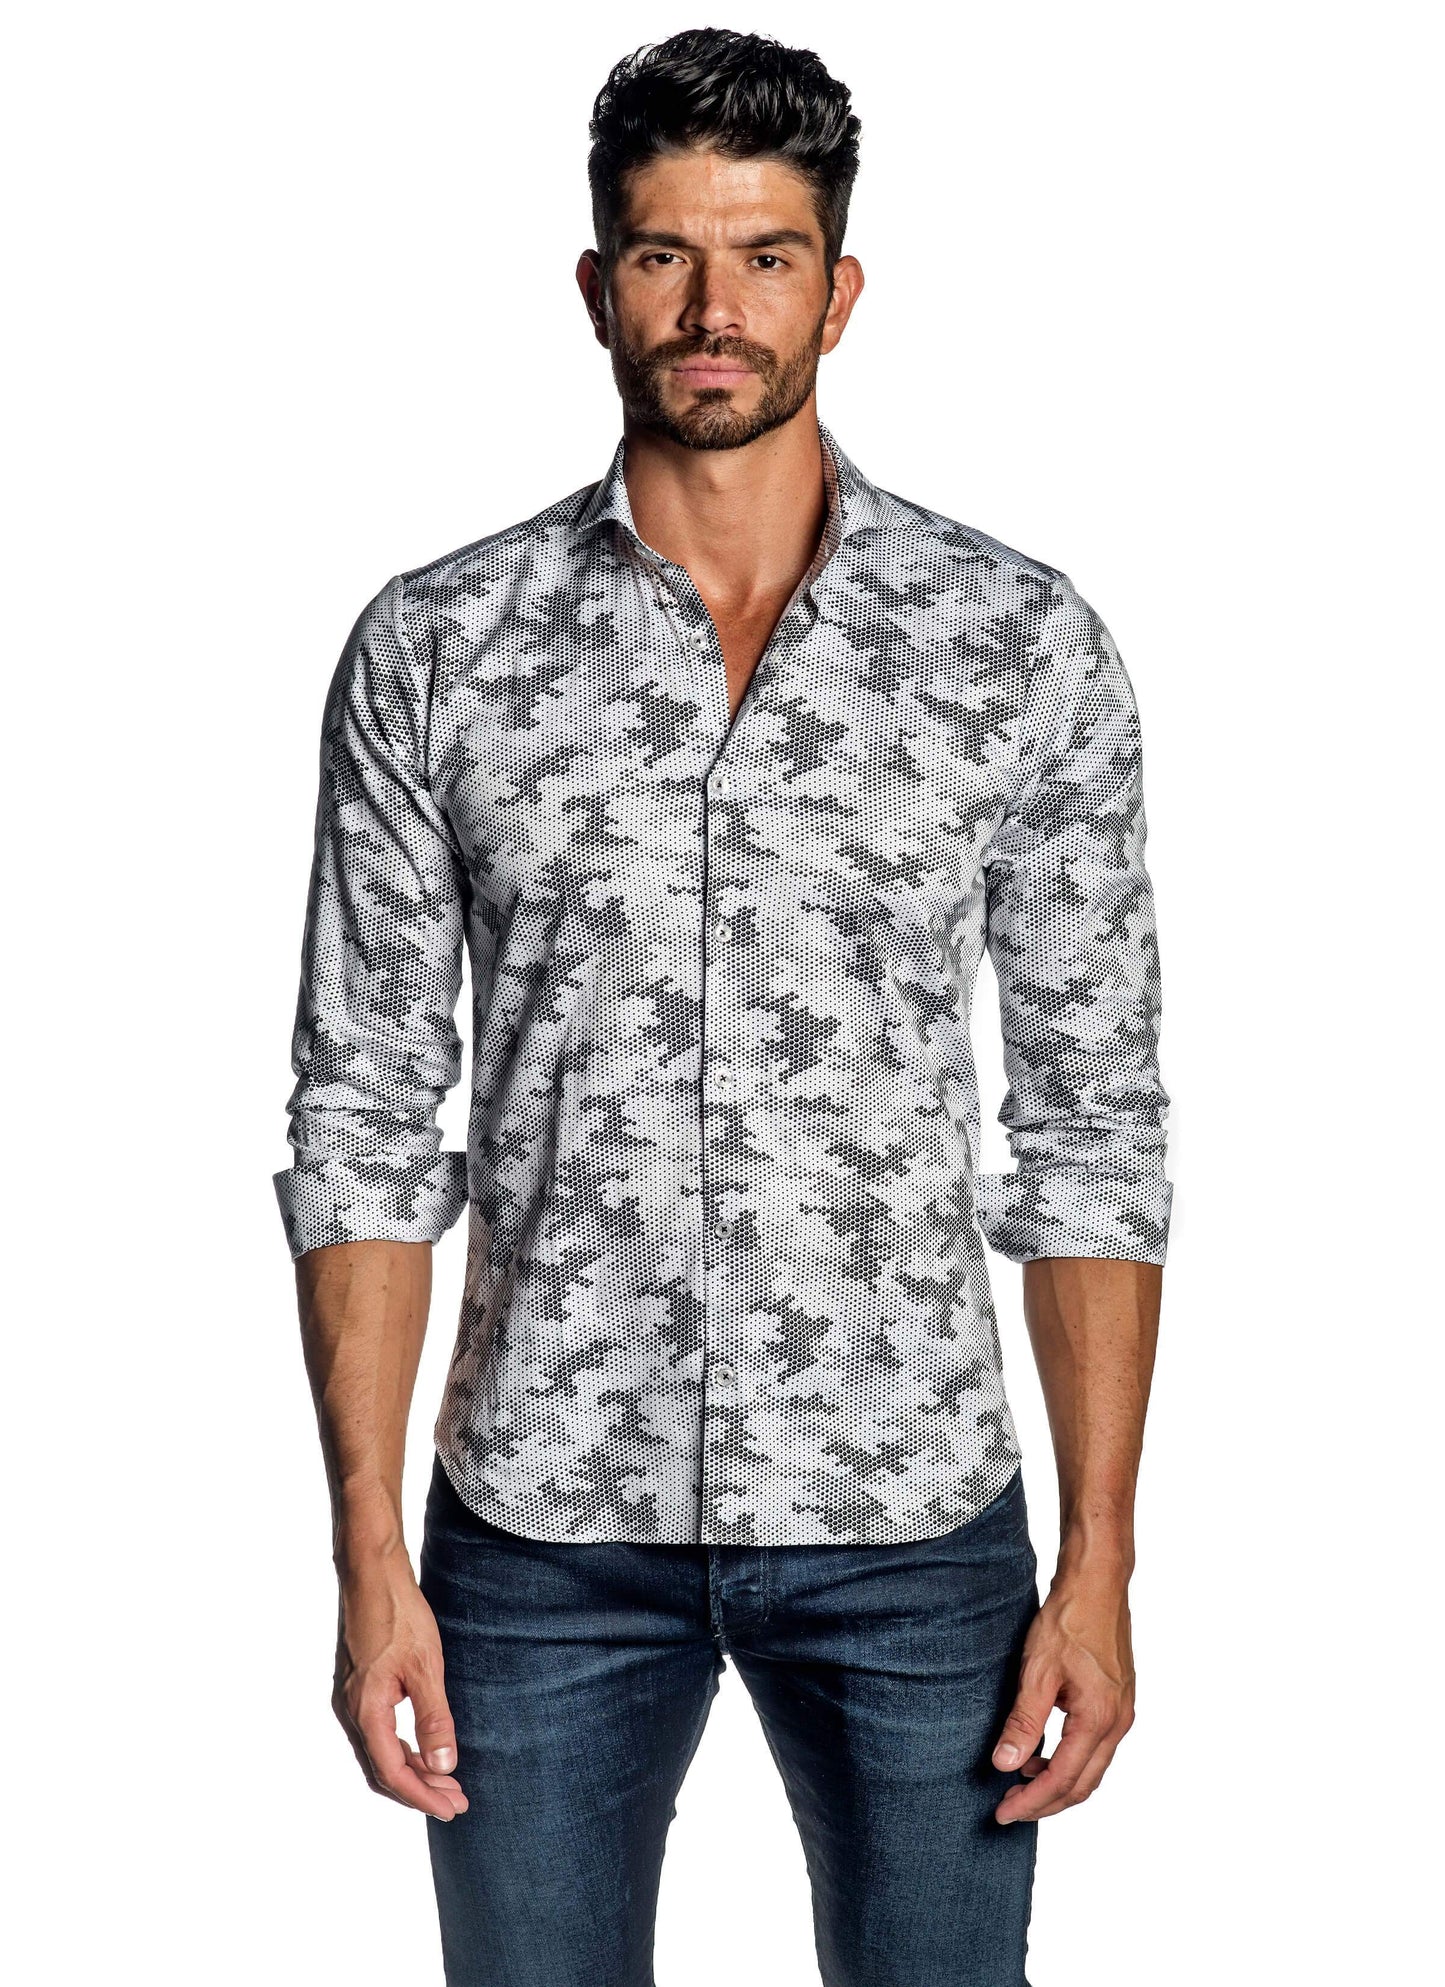 White Black Camouflage Print Shirt for Men AH-ITA-T-9002 - Jared Lang